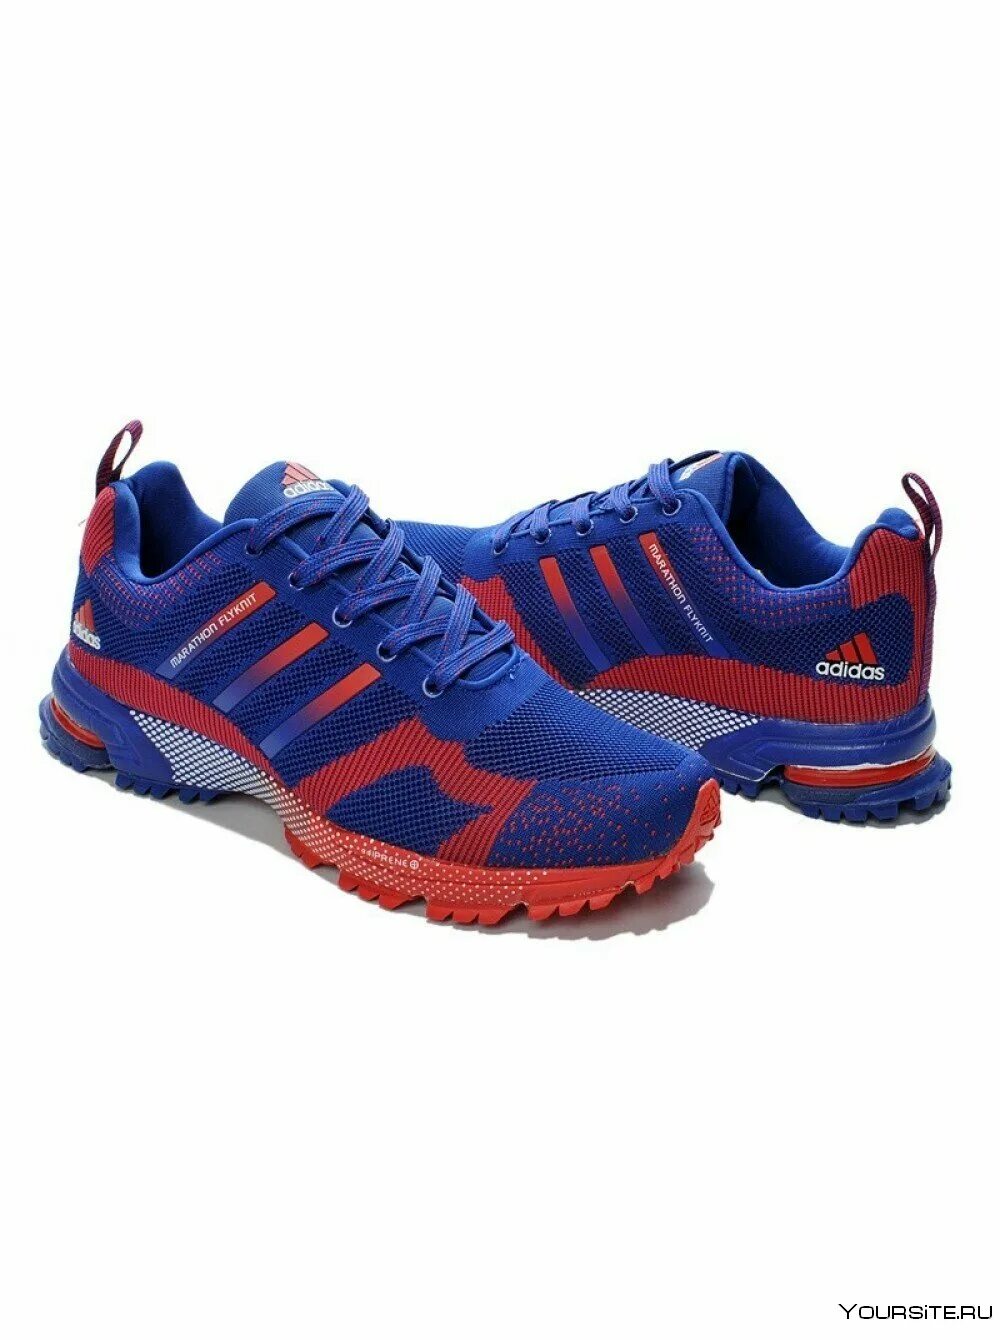 Адидас красно синие. Adidas Marathon Flyknit. Кроссовки адидас мужские a243-4. Adidas Marathon Flyknit Blue. Adidas Marathon Flyknit Blue/Red.